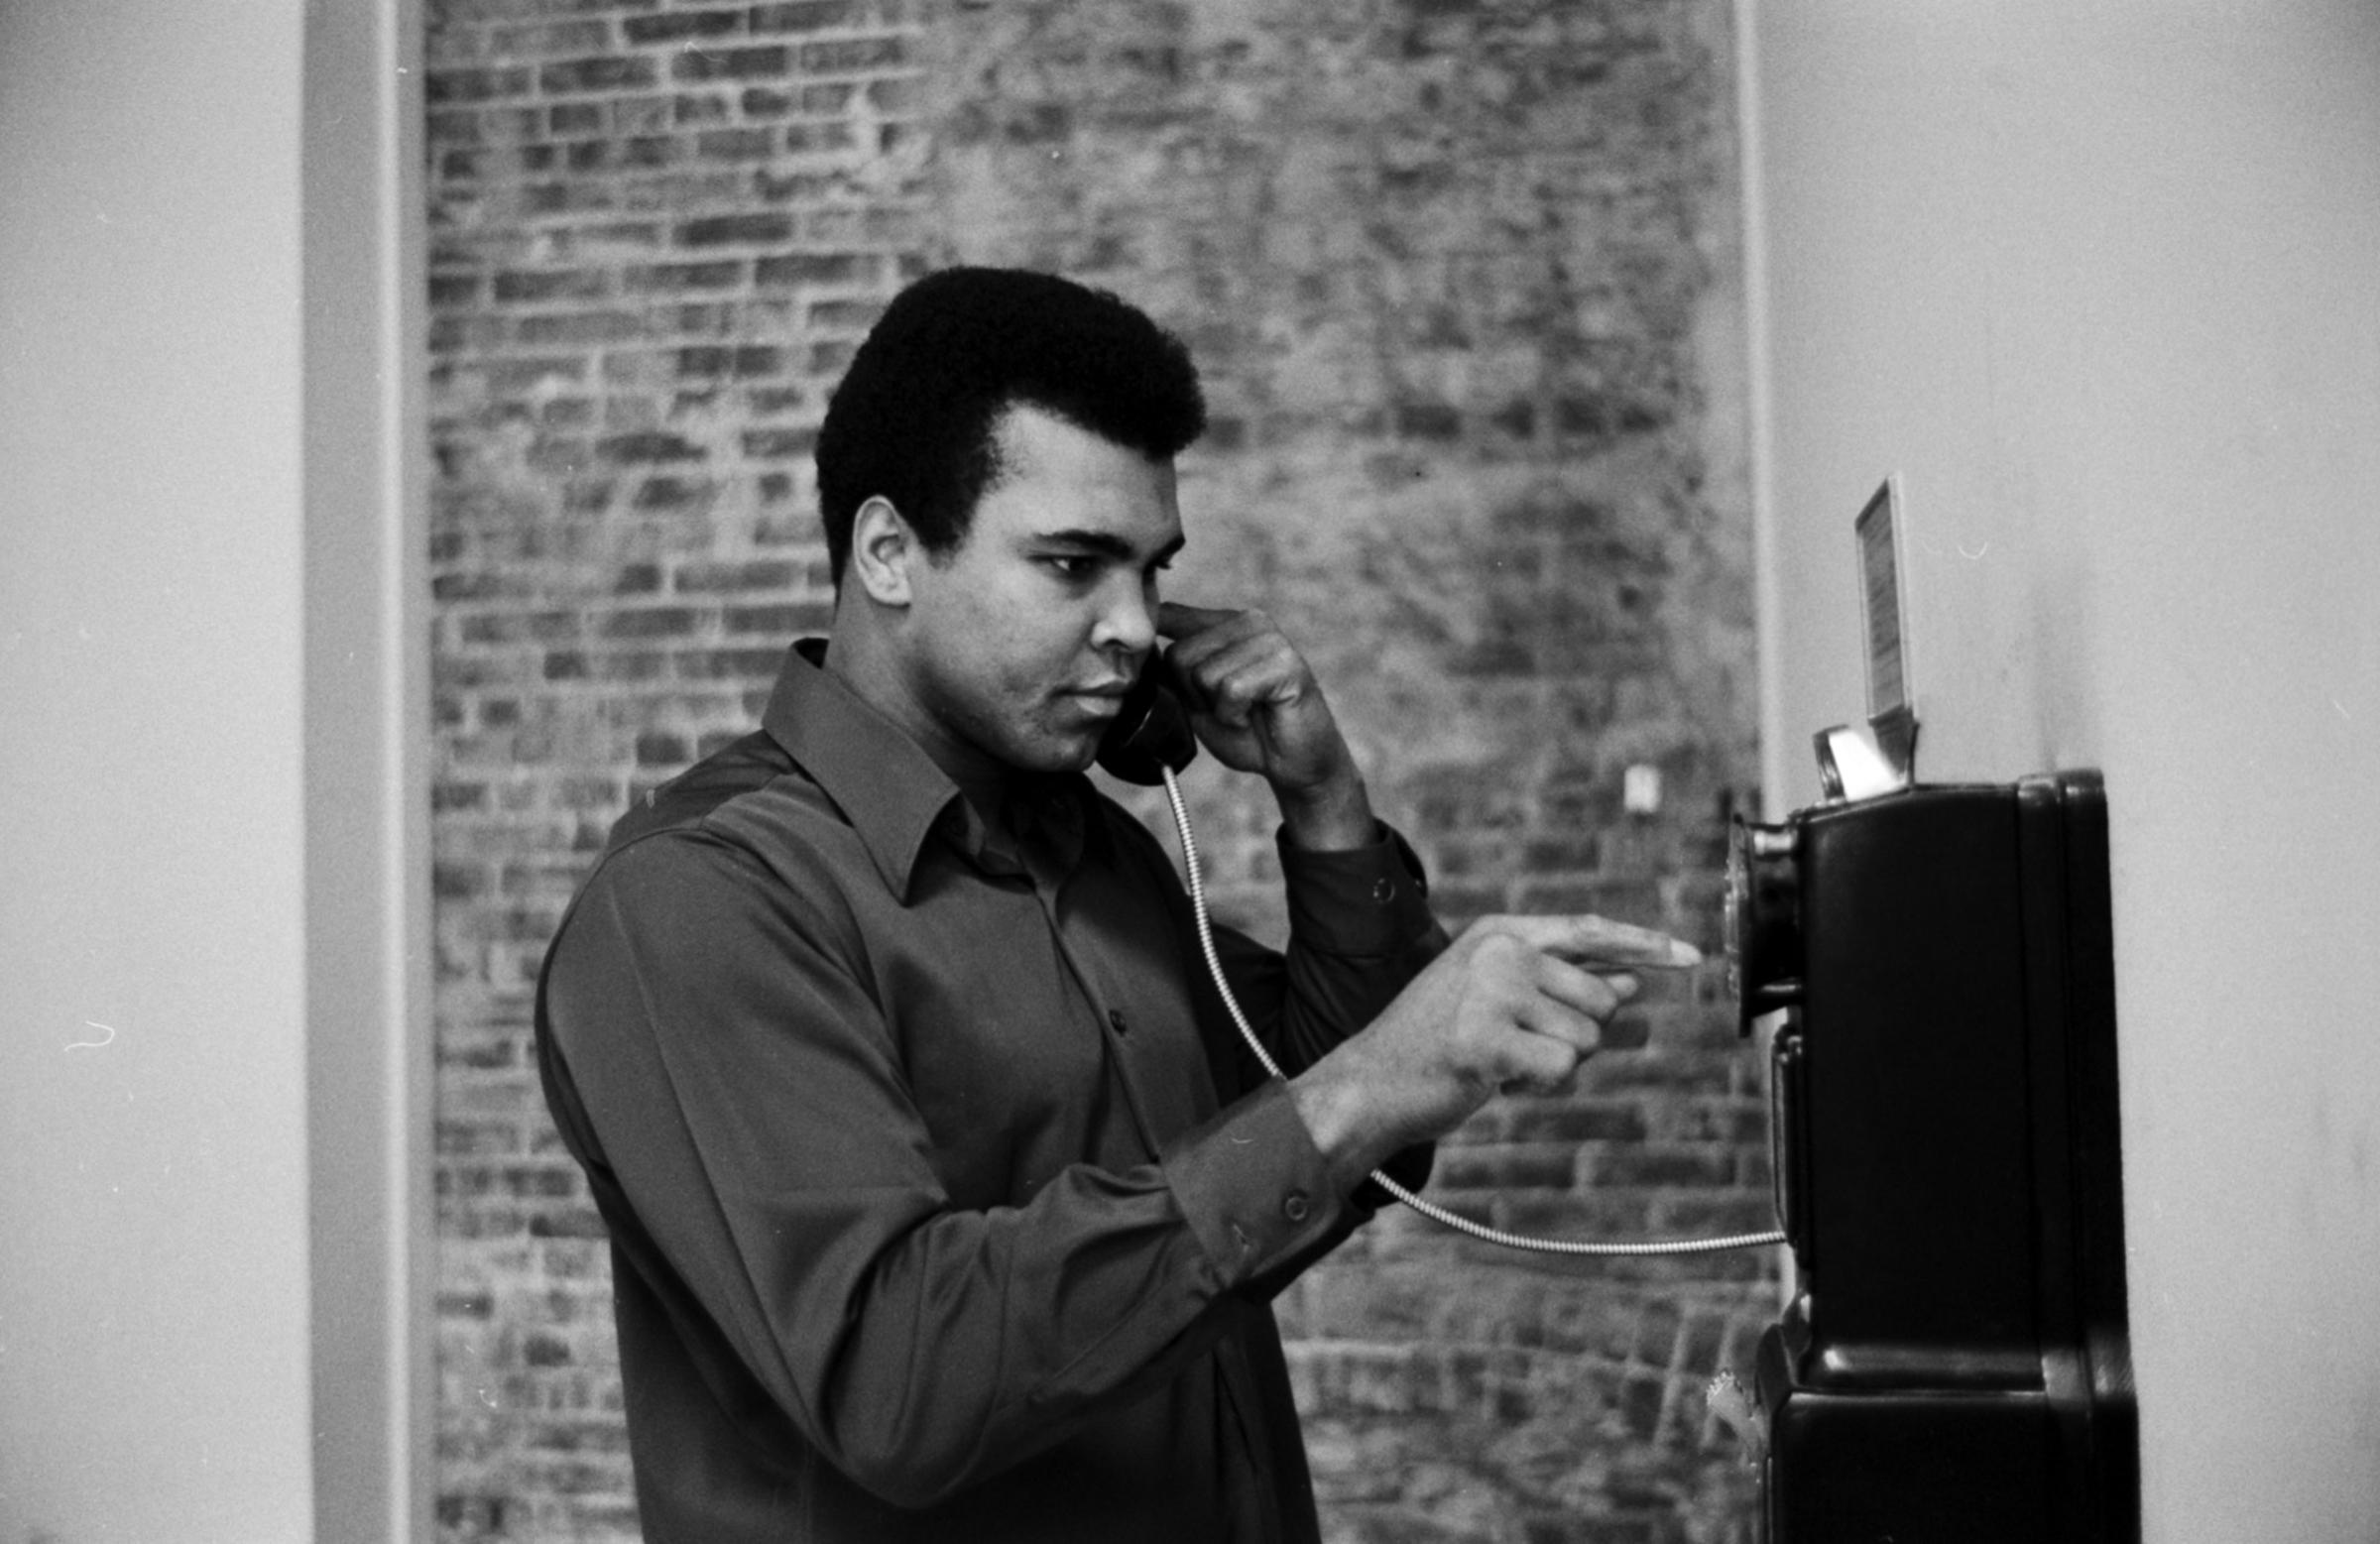 Muhammad Ali on the phone, 1971.